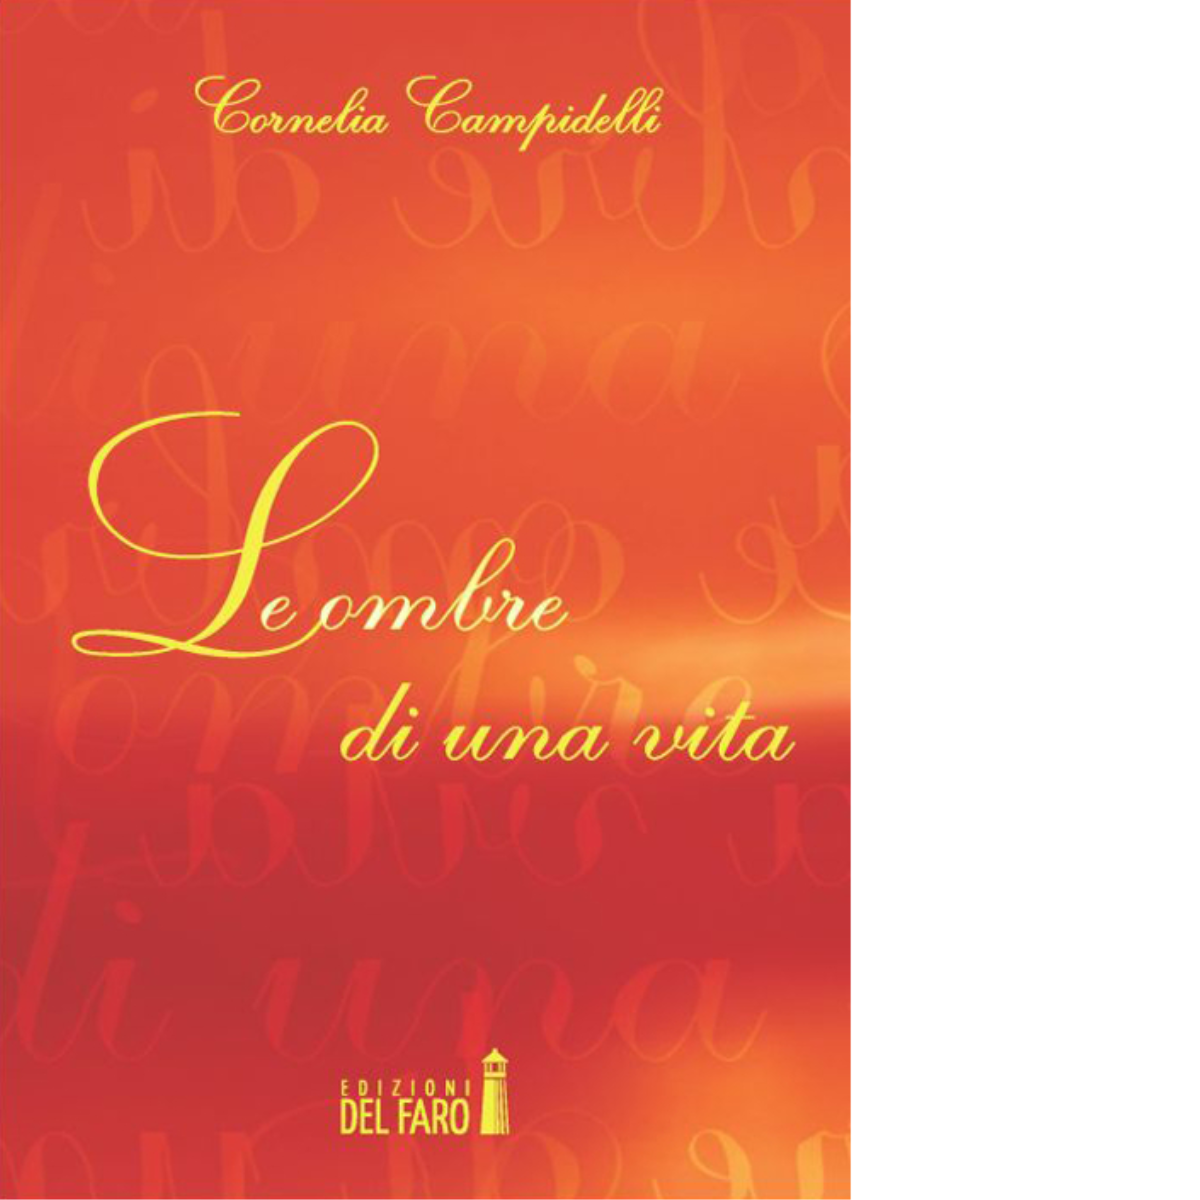 Le ombre di una vita di Cornelia Campidelli - Edizioni Del faro, 2014